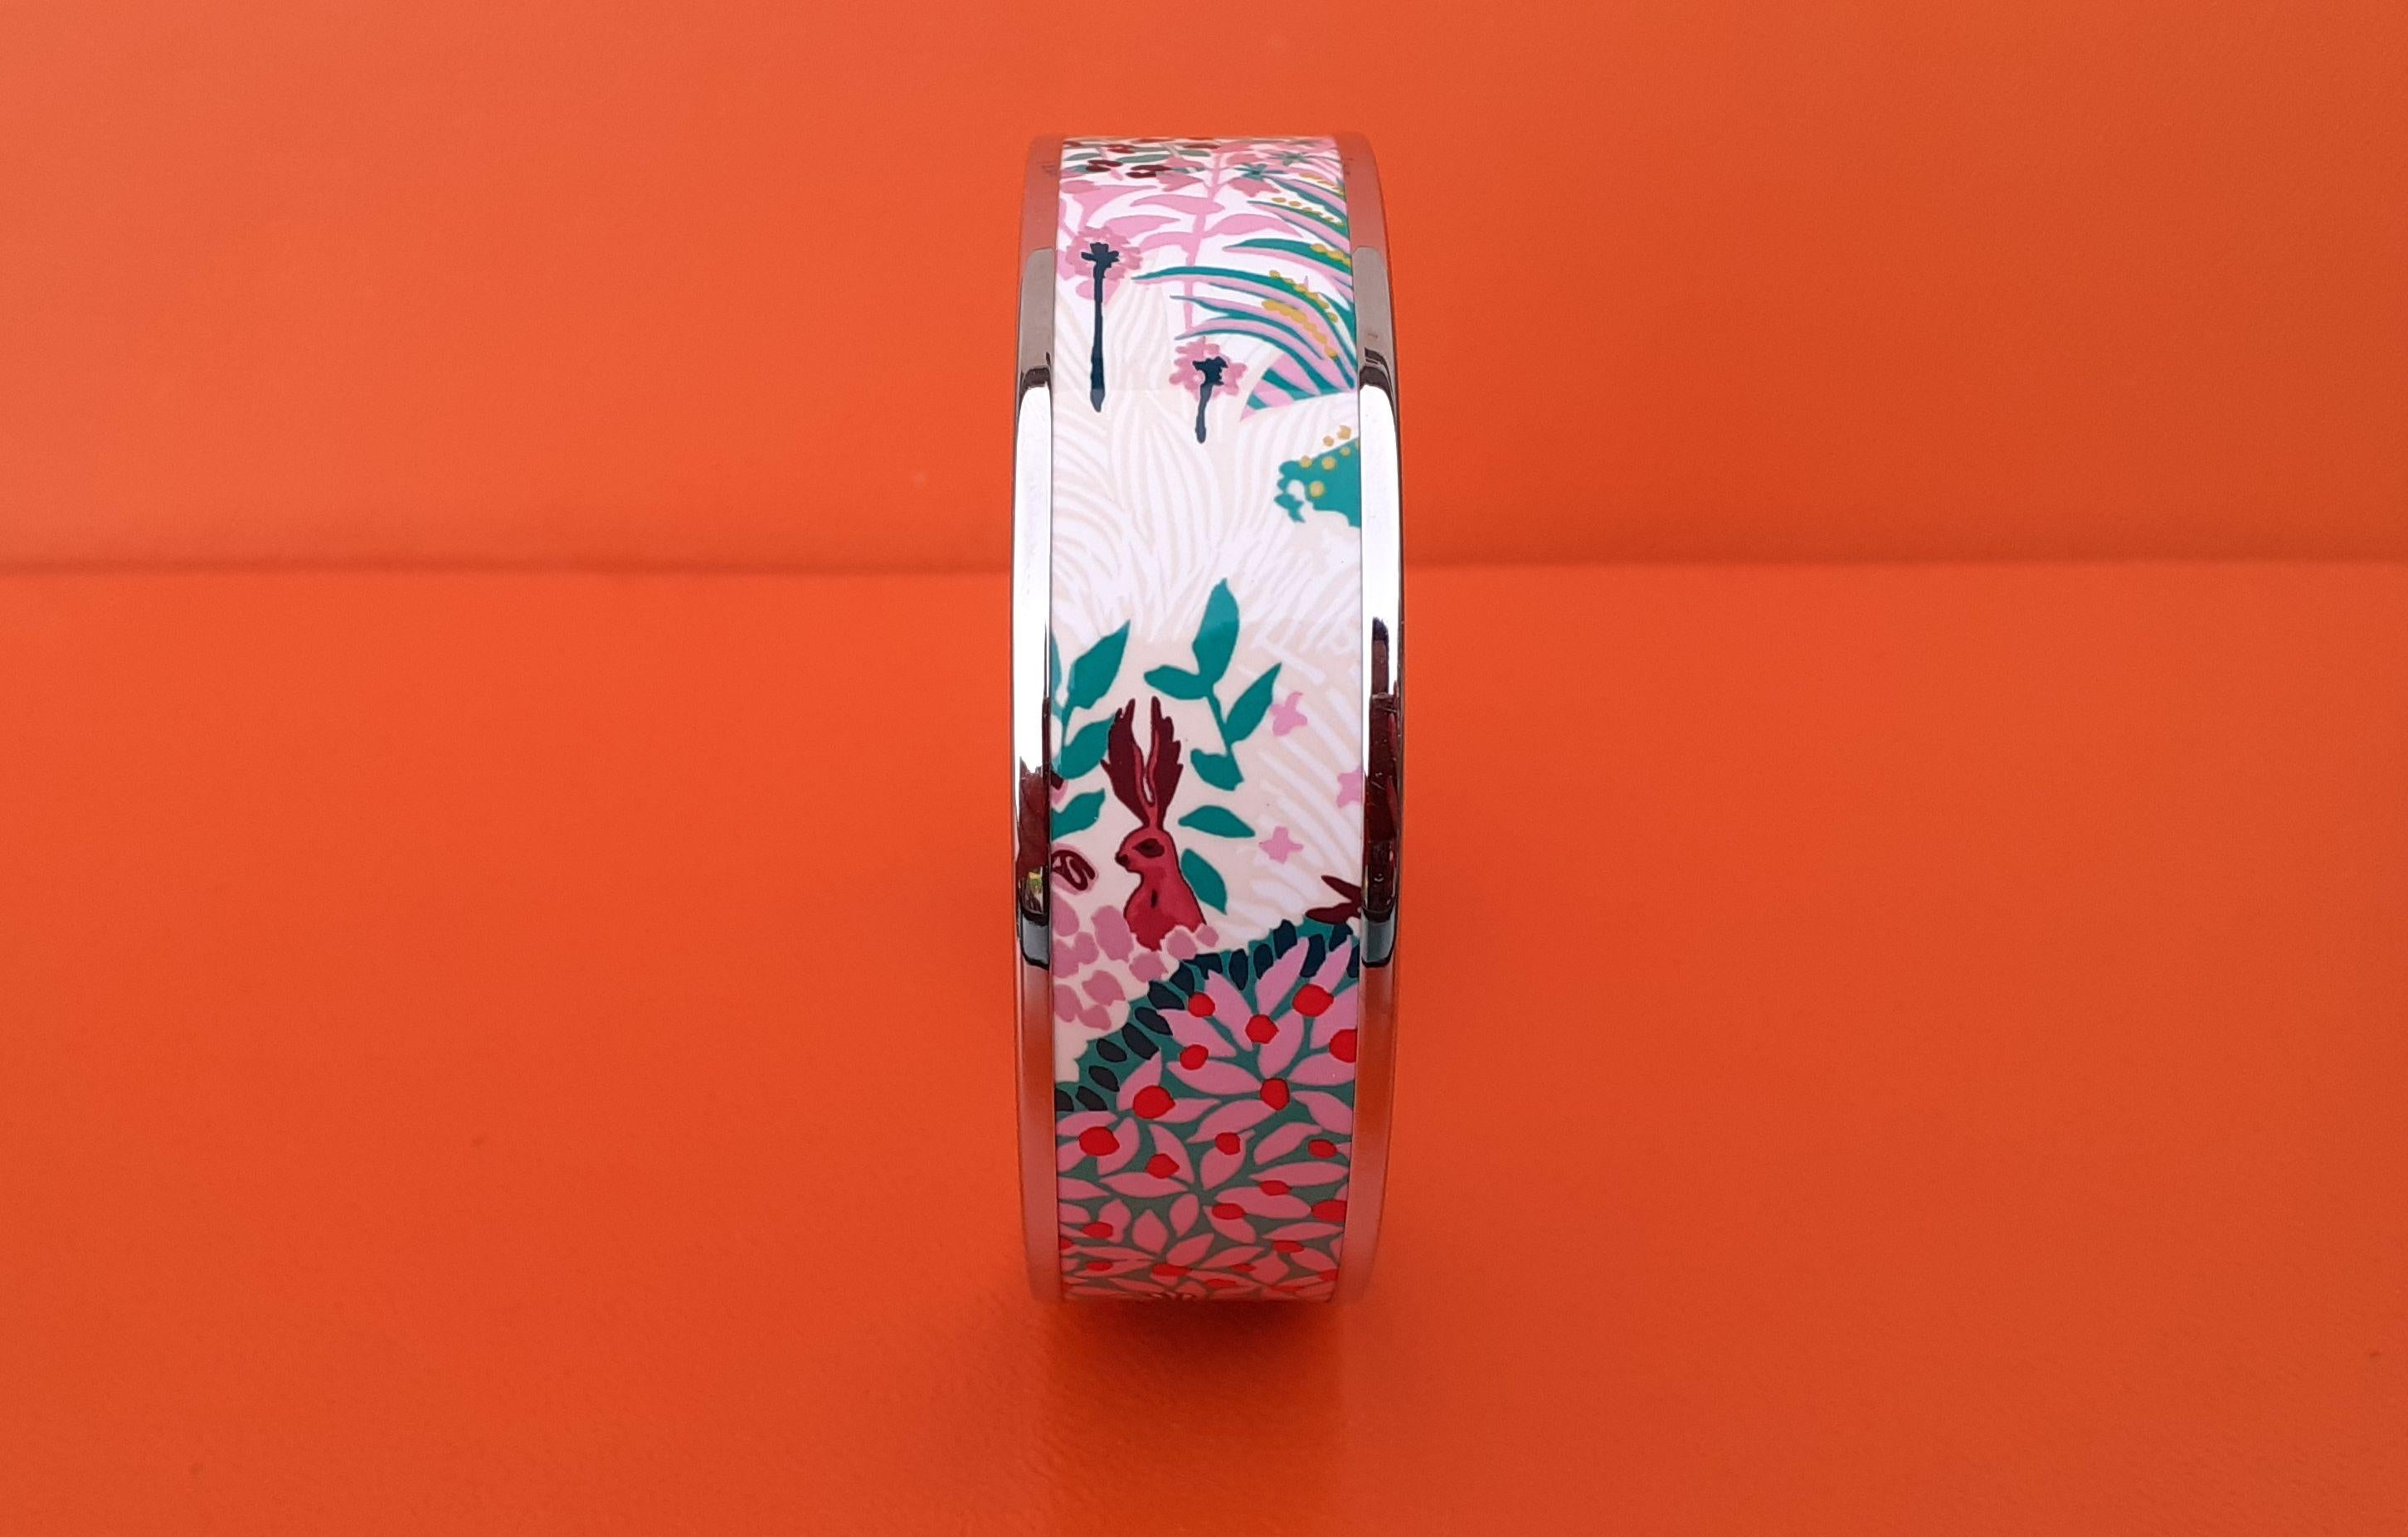 Magnifique bracelet Hermès authentique

Impression : 